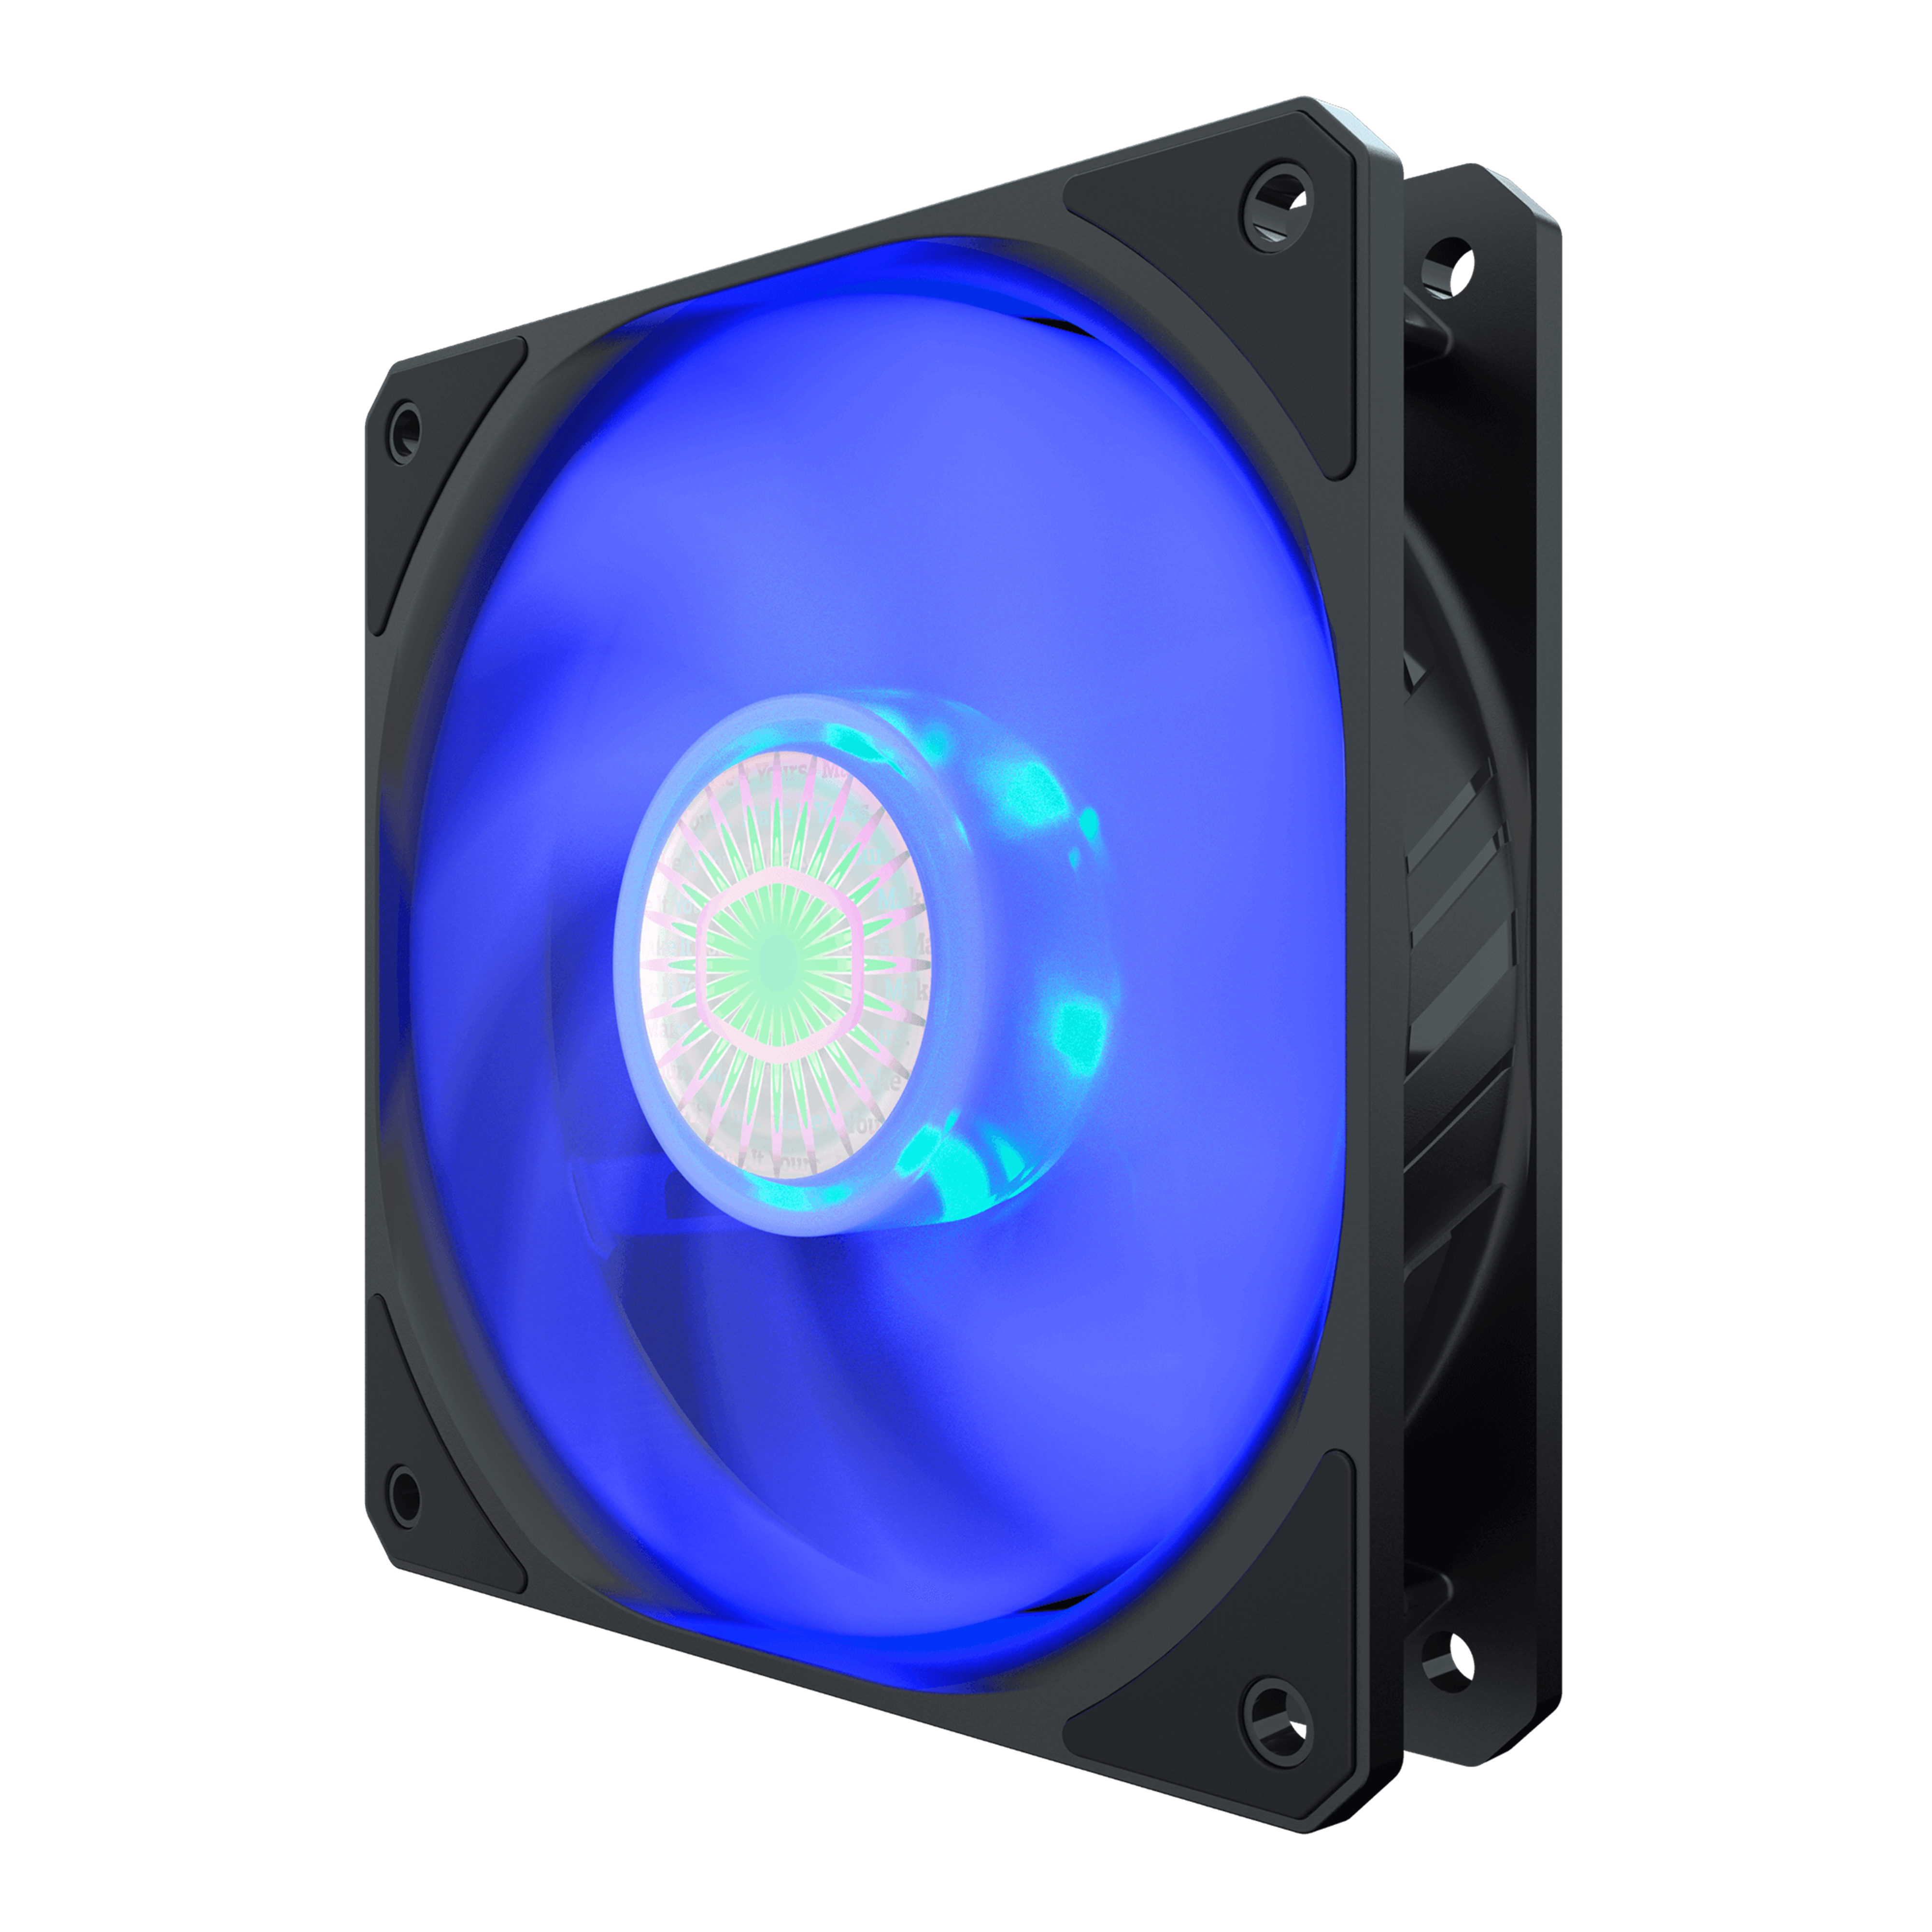 3 CONF da CoolerMaster SickleFlow 120mm Blue LED Case Fan 